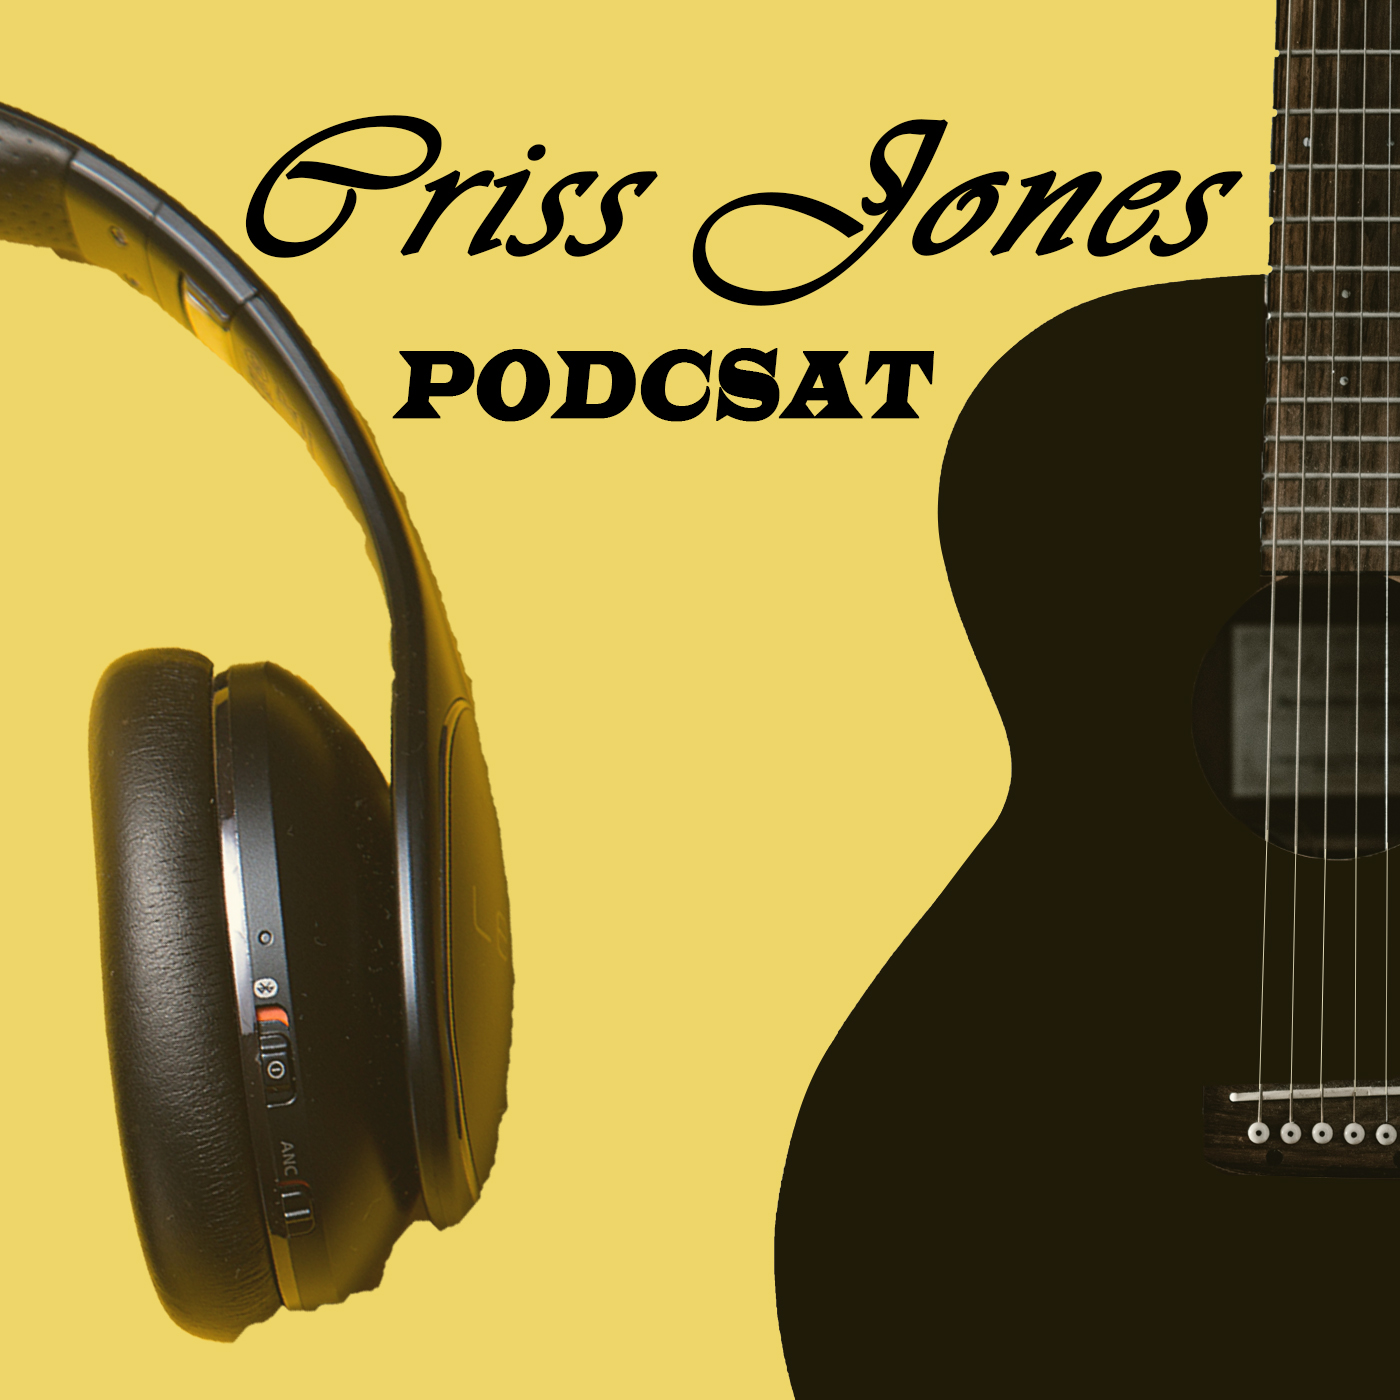 The mrcrissjones's Podcast